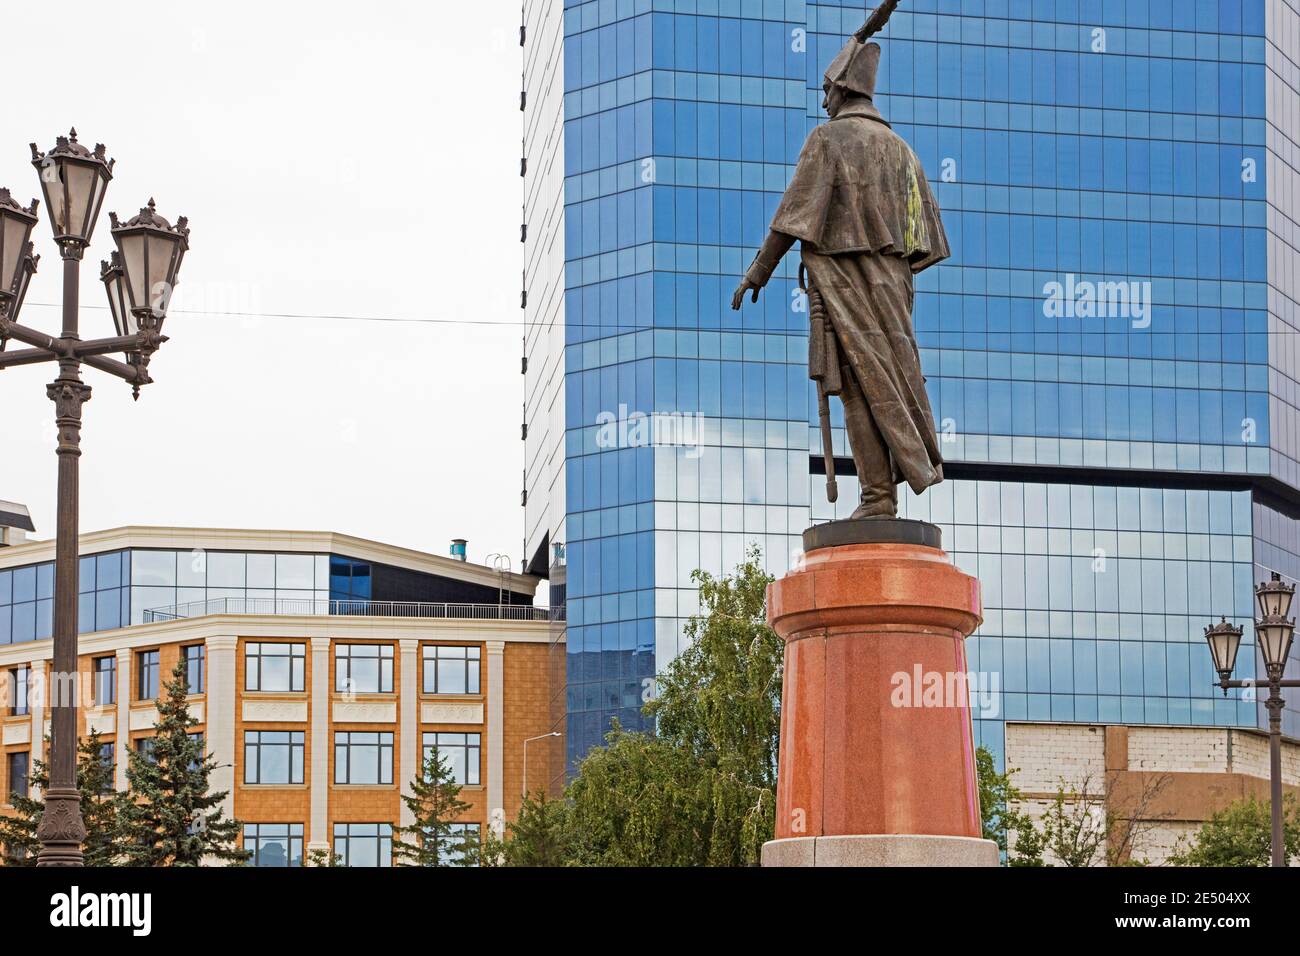 Statue von Nikolai Resanov, russischen Adligen und Staatsmann in der Innenstadt von Krasnojarsk, Krasnojarsk Region, Sibirien, Russland Stockfoto